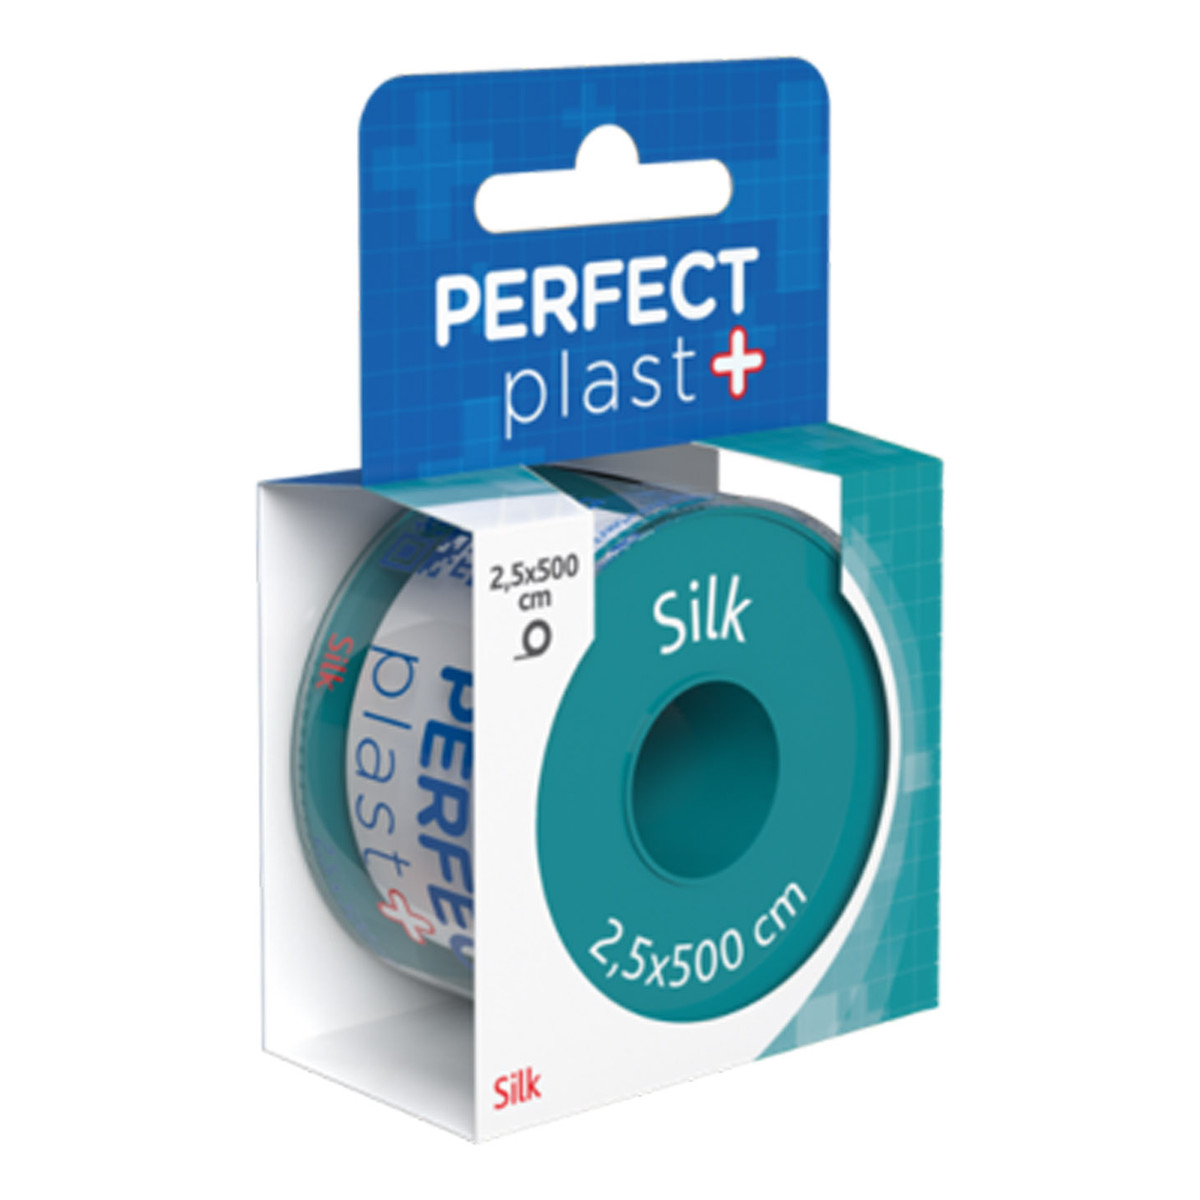 Perfect Plast Silk plastry opatrunkowe na rolce 2.5x500cm